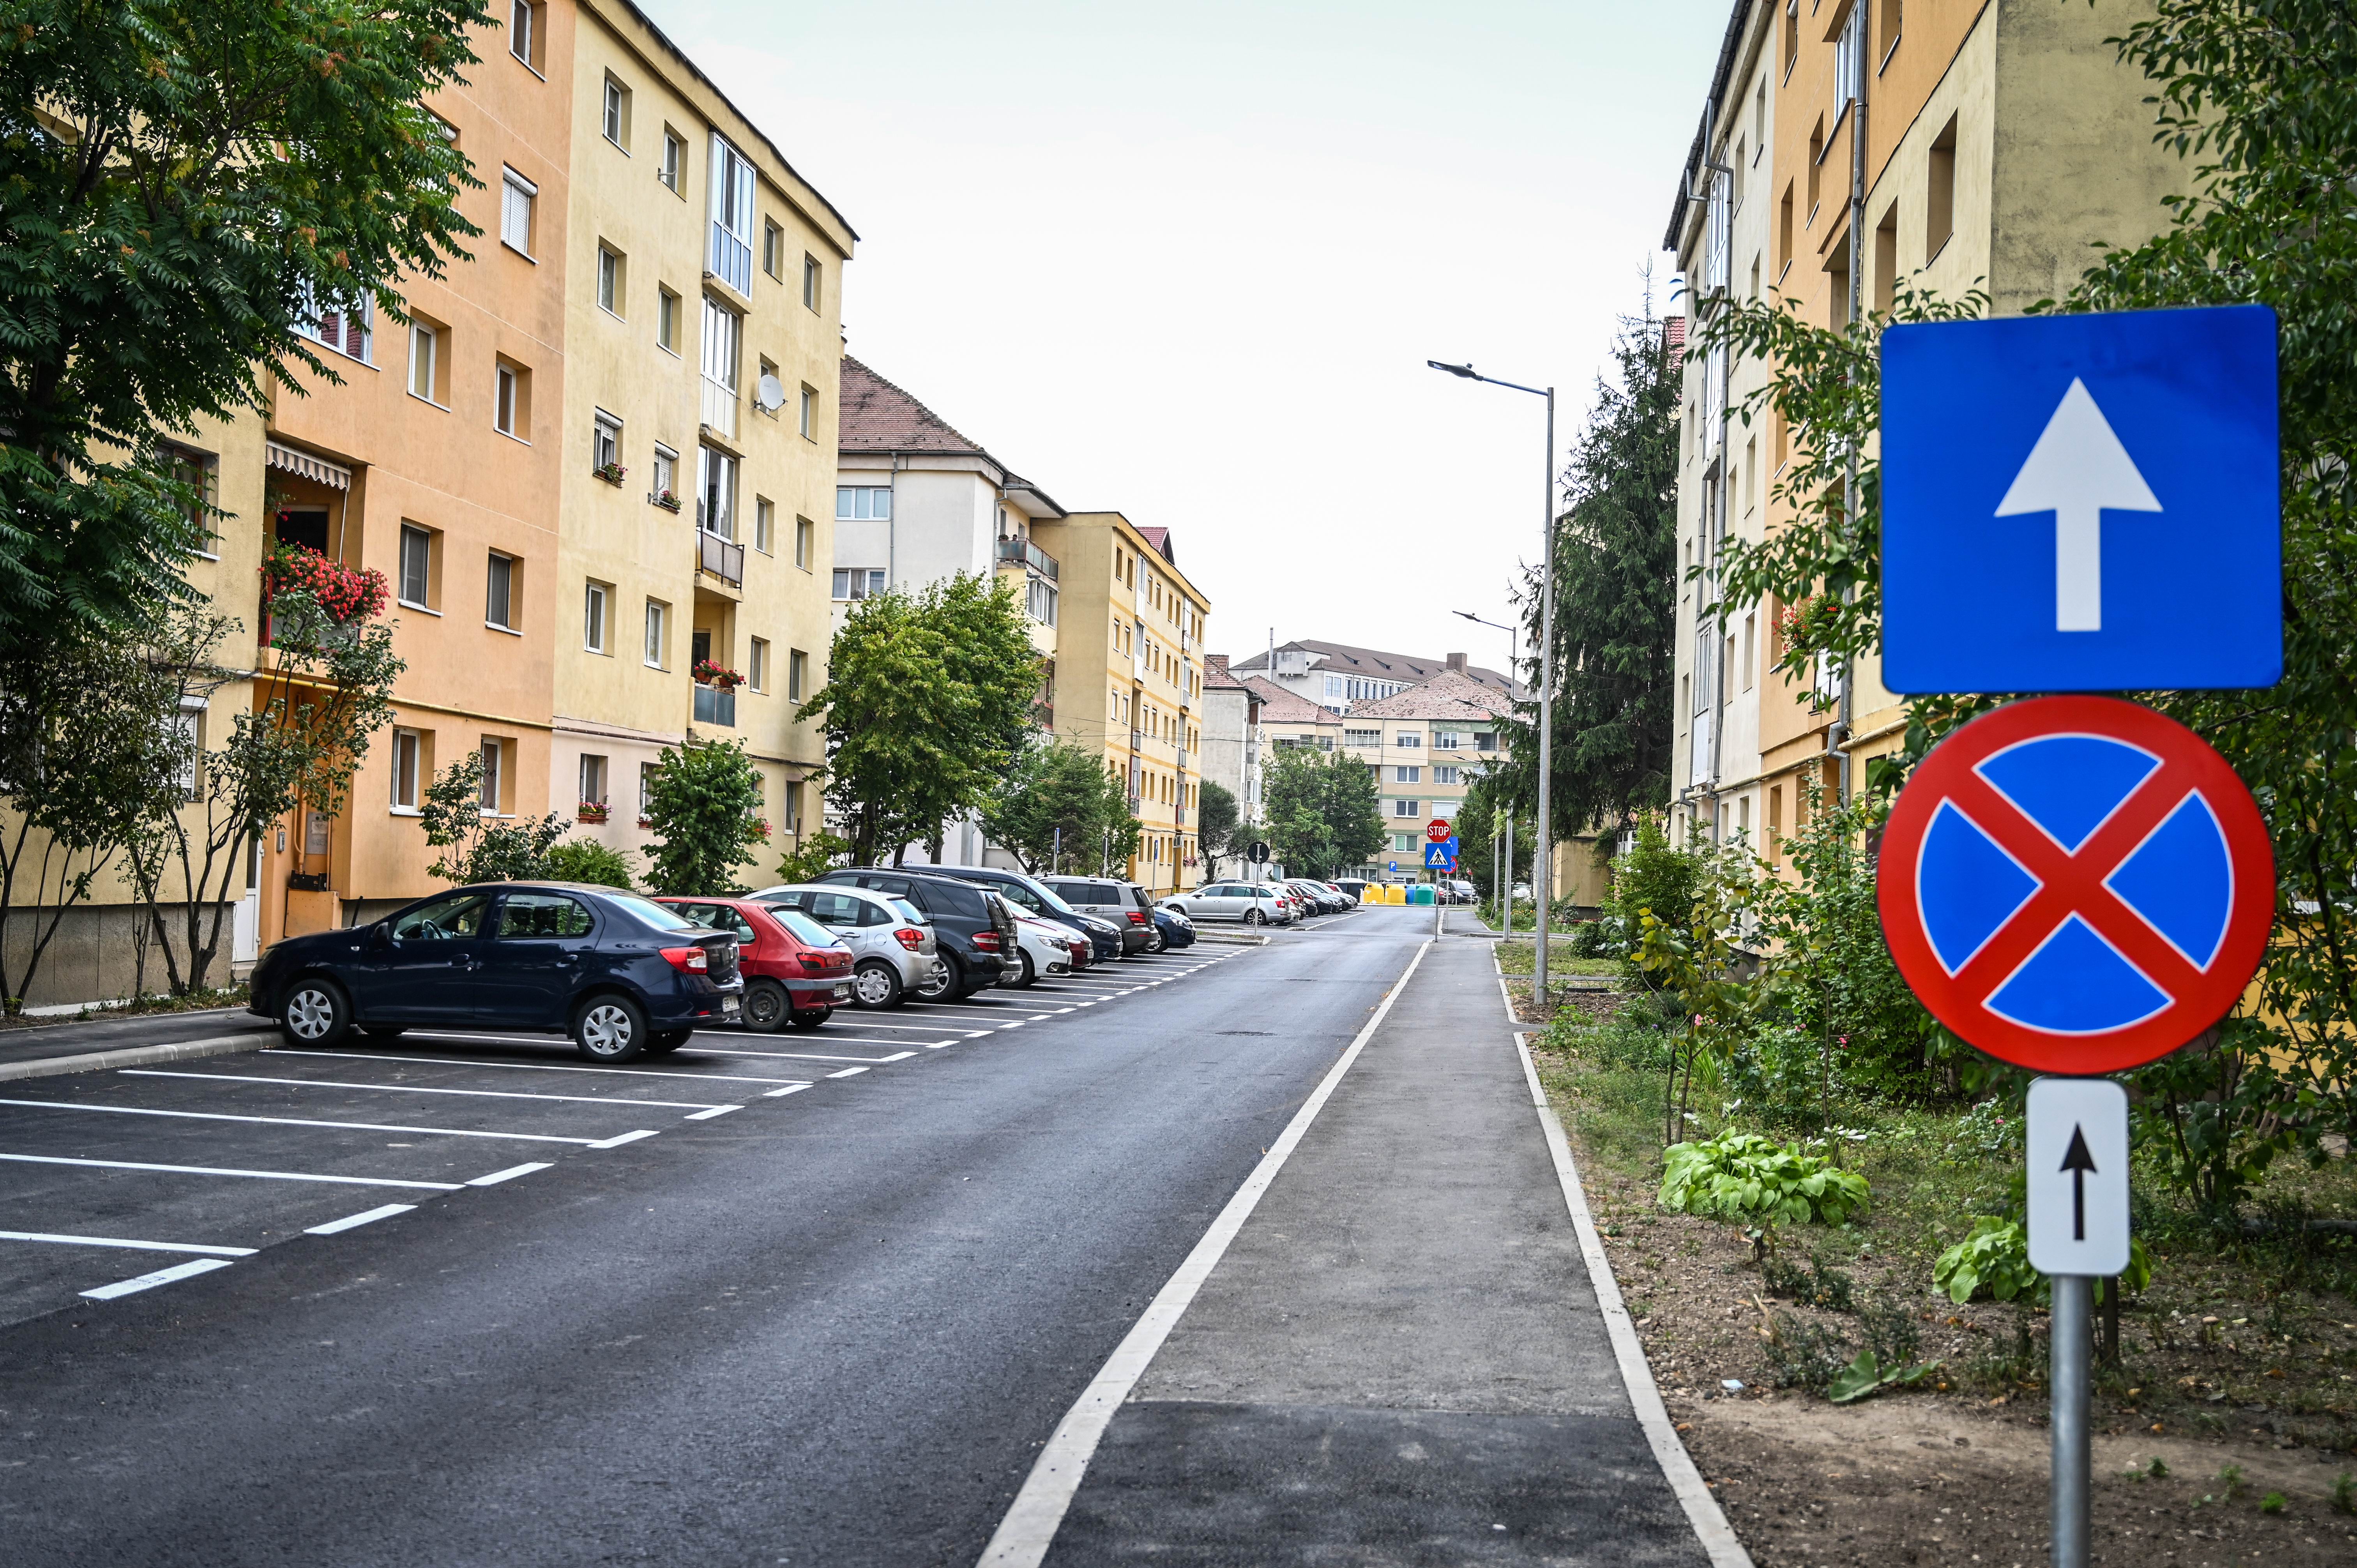 Consultare publică: Primăria Sibiu intenționează să ordoneze utilizarea locurilor de parcare în zonele de blocuri